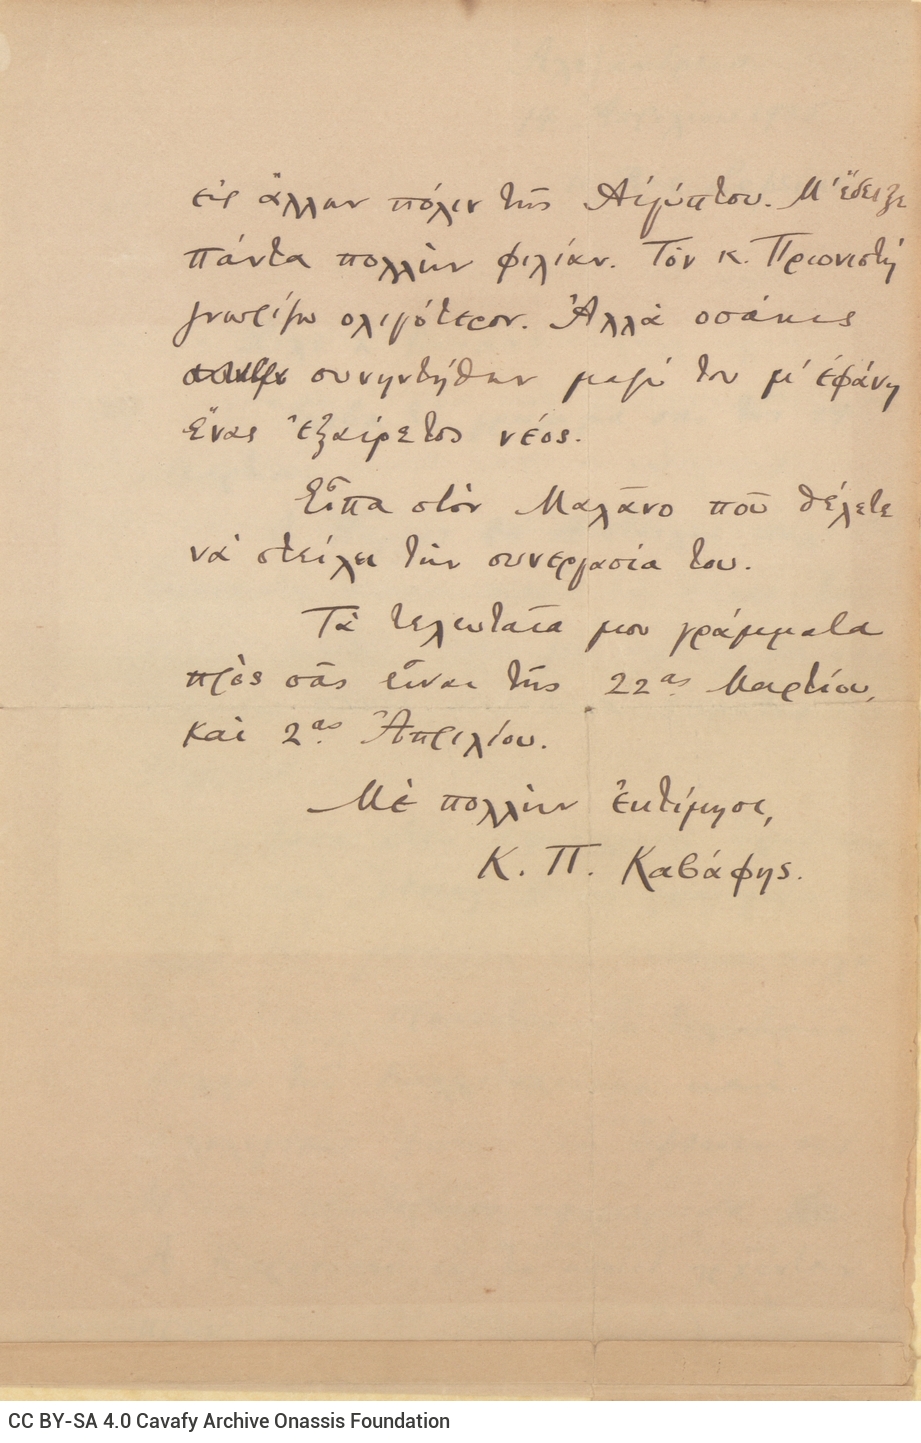 Χειρόγραφη επιστολή του Καβάφη προς τον Μάριο Βαϊάνο στις τρεις πρώ�